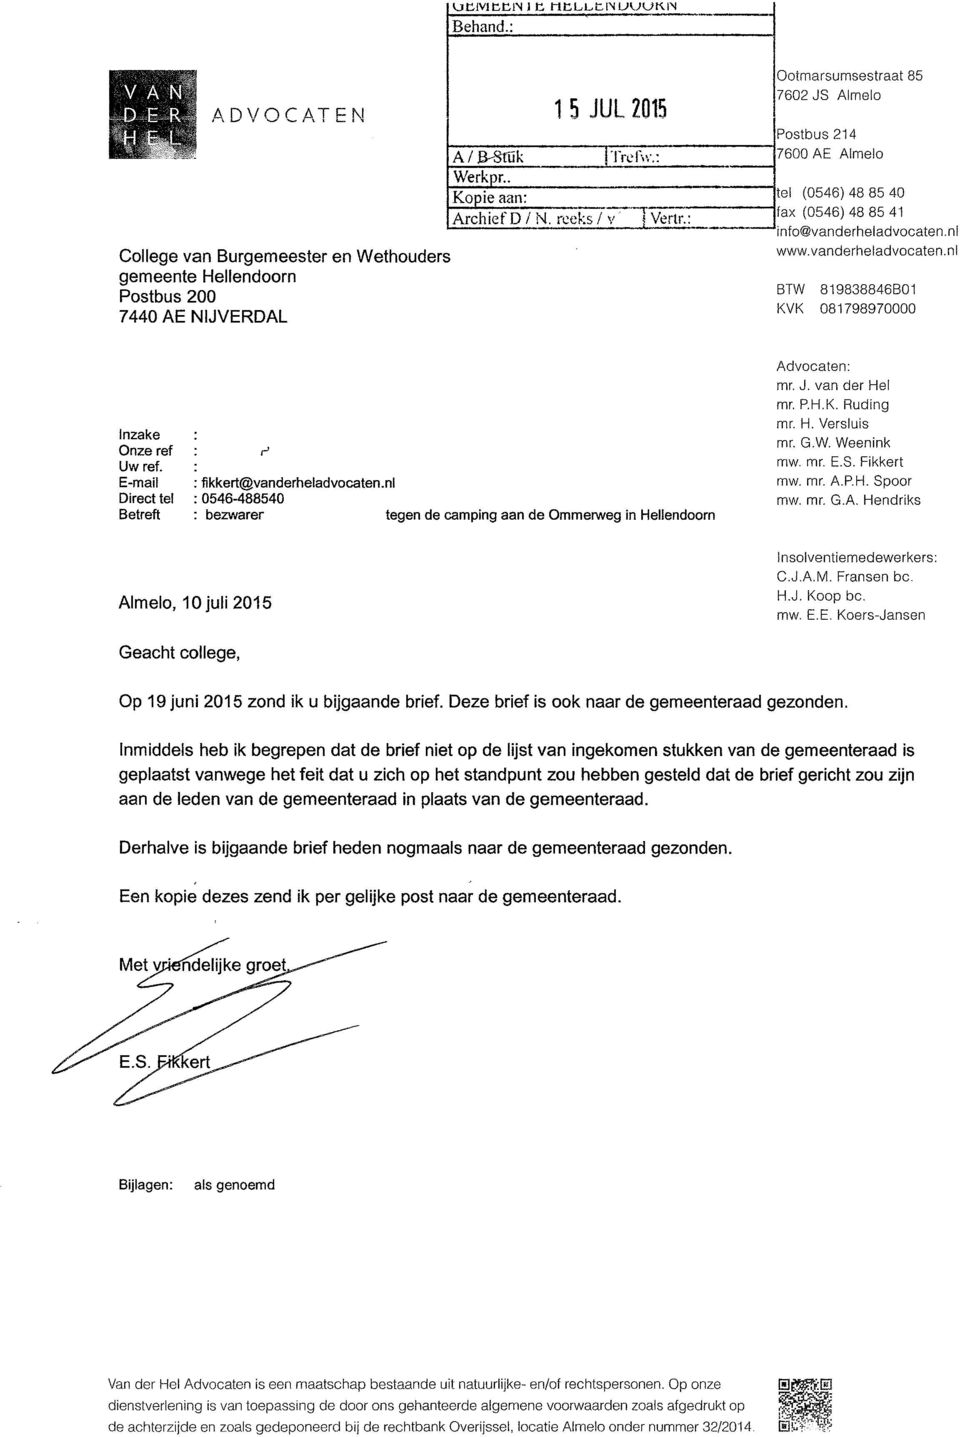 E-mail Direct tel Betreft : fikkert@vanderheladvocaten.nl : 0546-488540 bezwarer tegen de camping aan de Ommerweg in Hellendoorn Advocaten: mr. J. van der Hel mr. P.H.K. Ruding mr. H. Versluis mr. G.